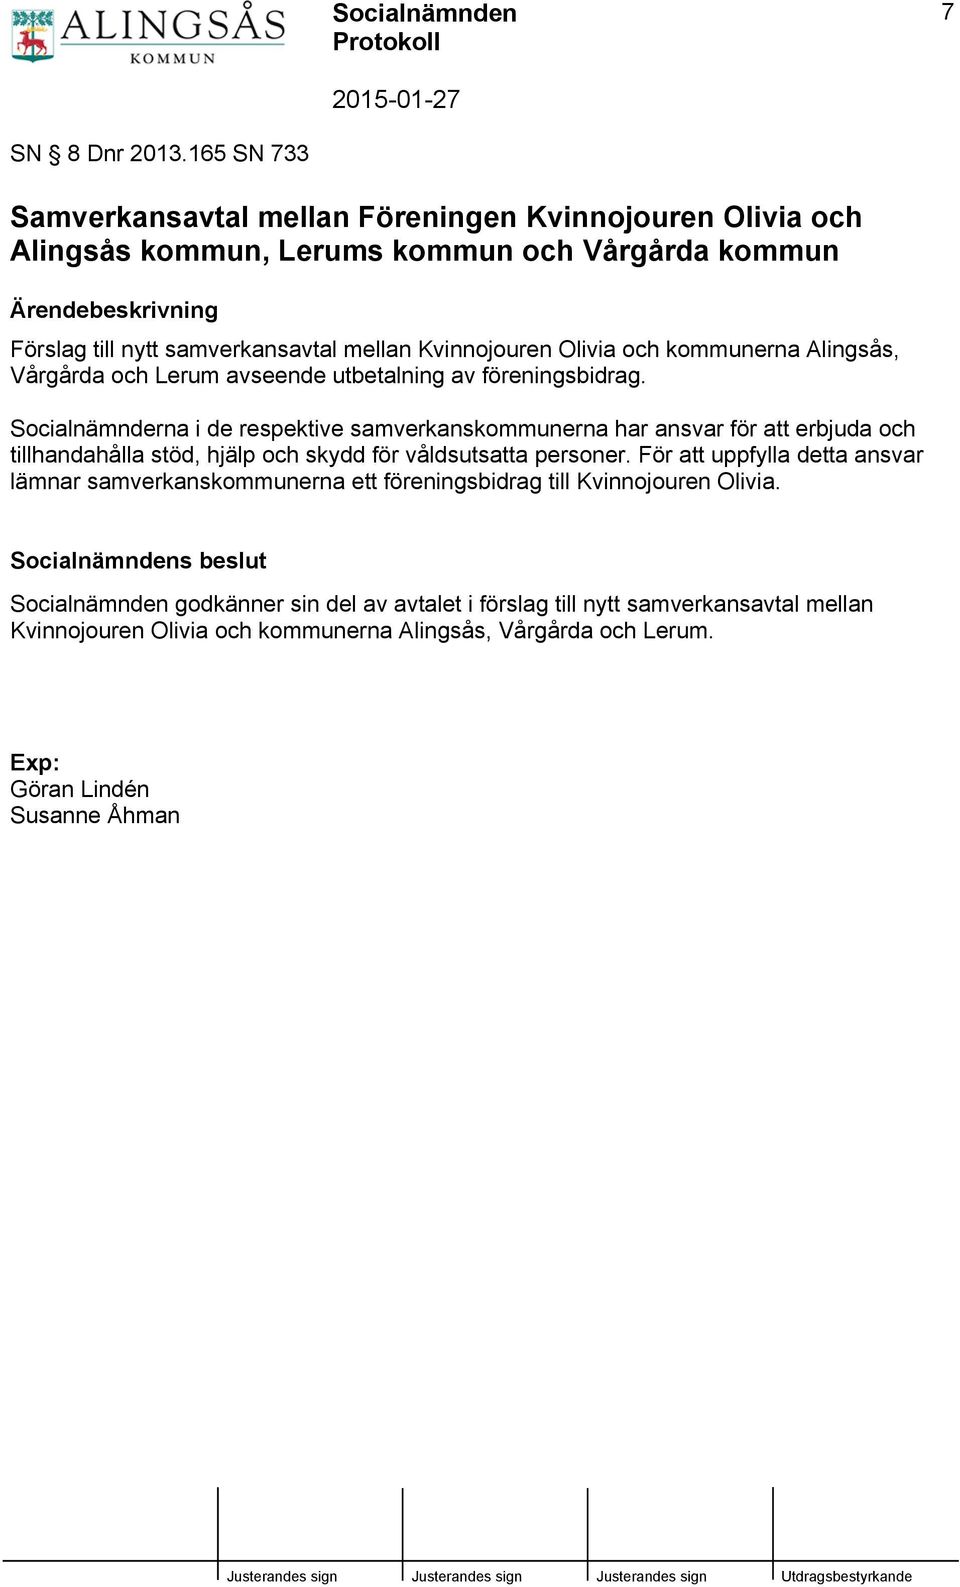 Kvinnojouren Olivia och kommunerna Alingsås, Vårgårda och Lerum avseende utbetalning av föreningsbidrag.